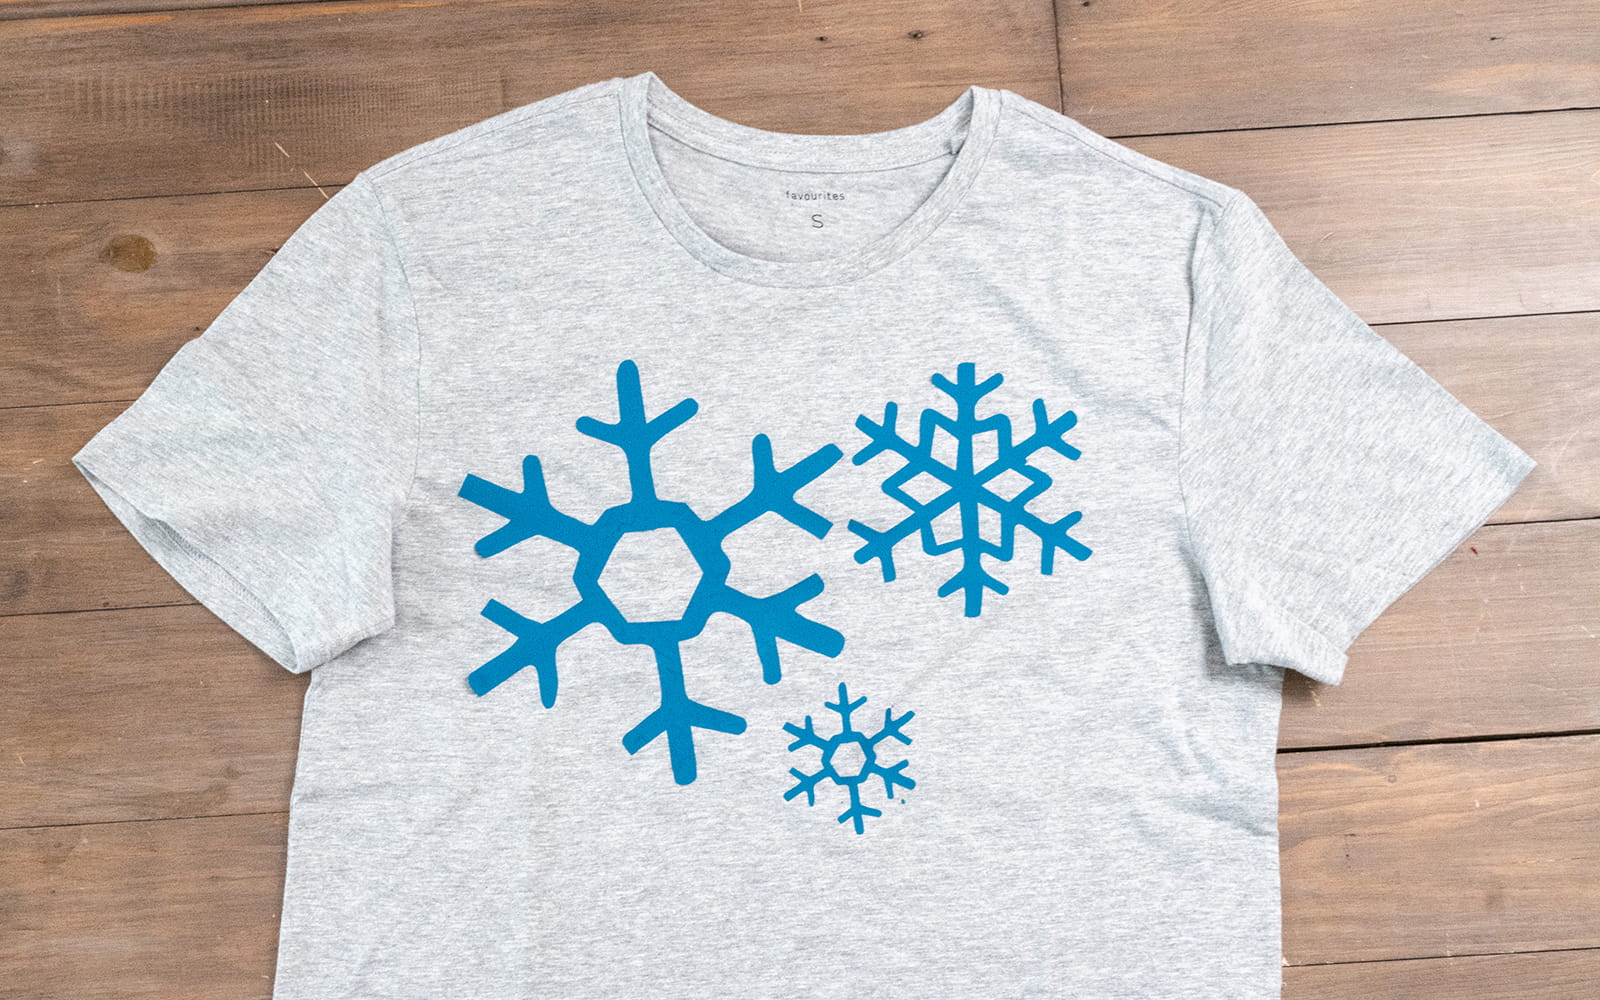 Blue vinyl snowflakes on grey t-shirt